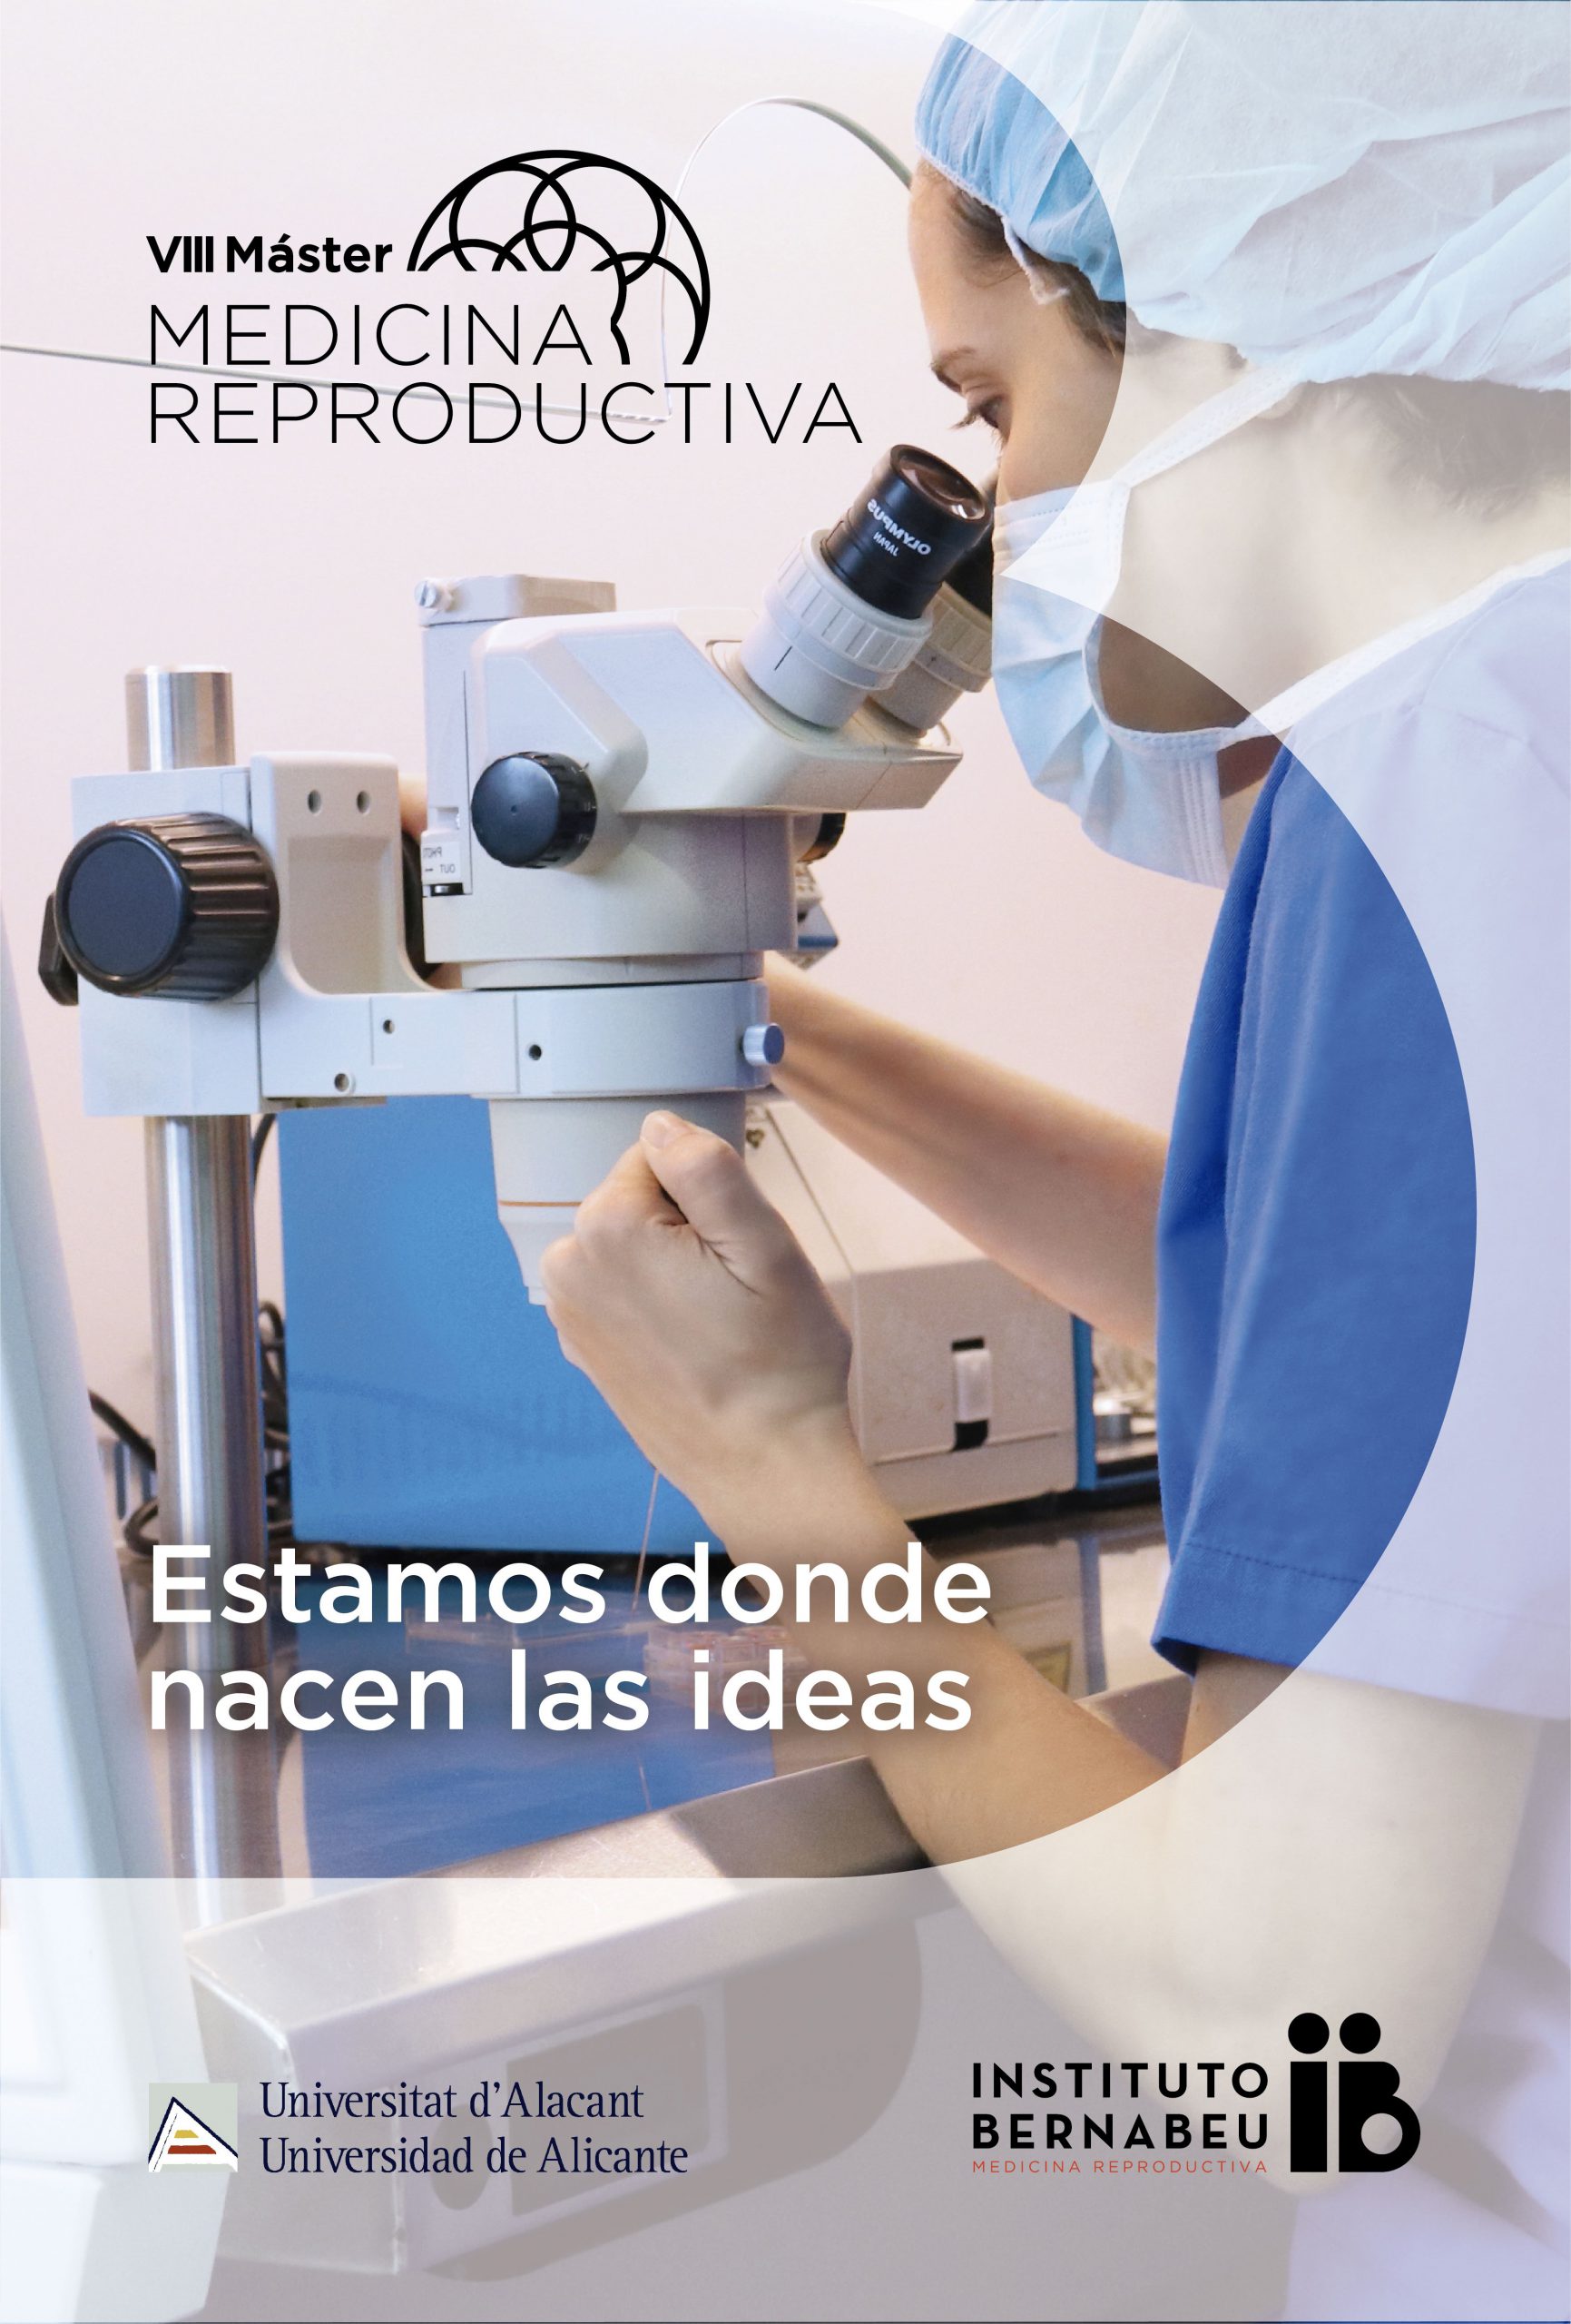 VIII Máster en Medicina Reproductiva Universidad de Alicante — Instituto Bernabeu